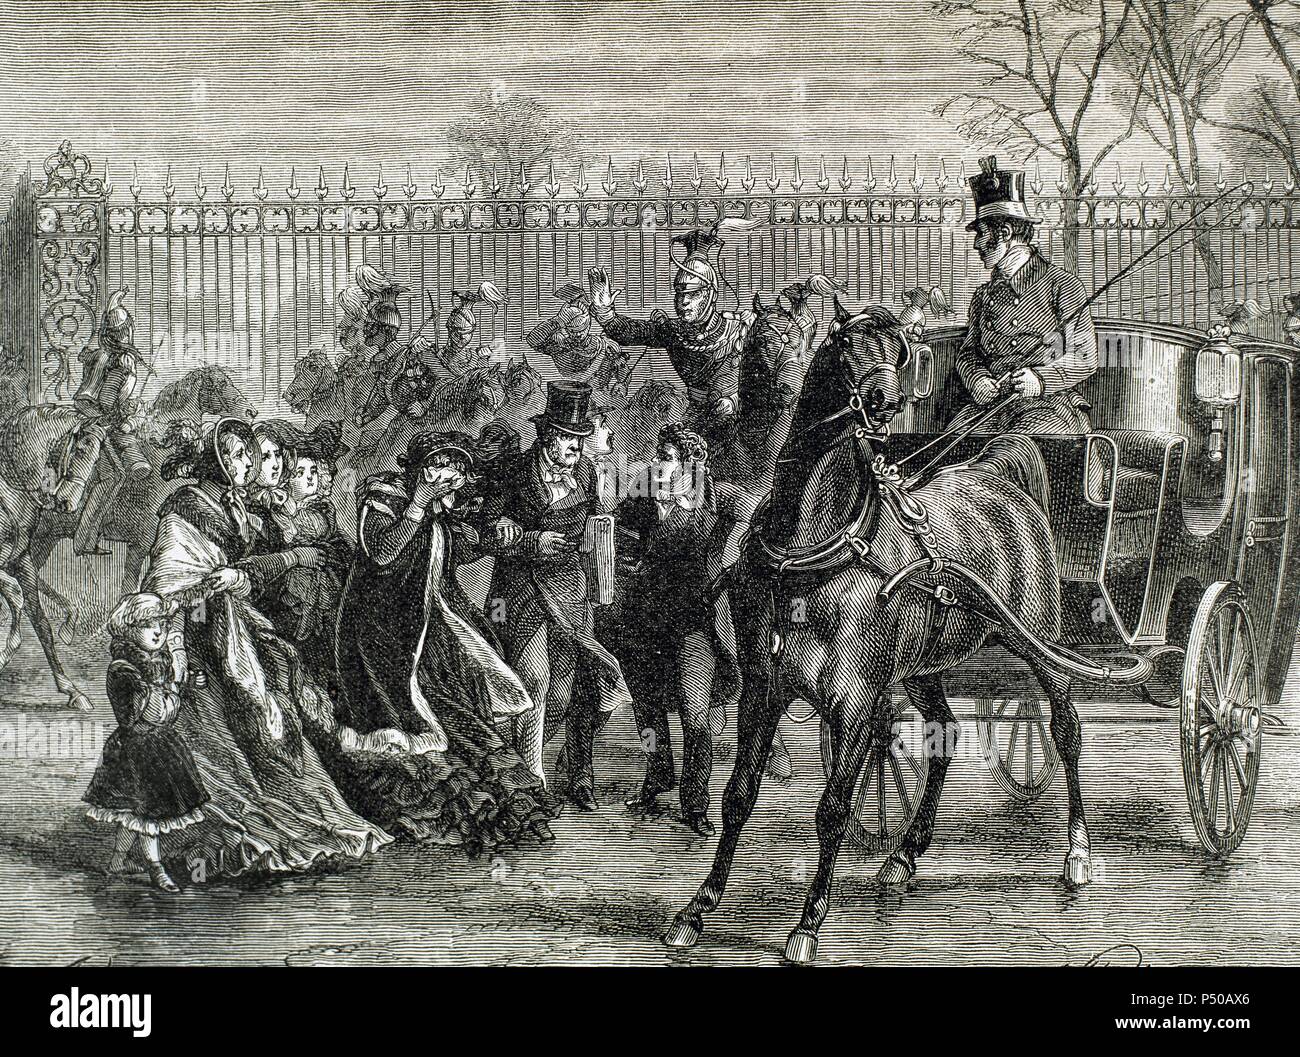 Französische Liberale Revolution (Februar 1848). Die Mob angegriffen auf den Tuilerien am 24. Februar 1848 Wegen der Weigerung des Monarchen das Wahlrecht zu verlängern. Aus diesem Grund hatte er zur Abdankung und die Republik wurde gegründet. Louis Philippe und seine Familie aus dem Tuileries Palace. Stich von J. Ladmiral, 1881. Stockfoto